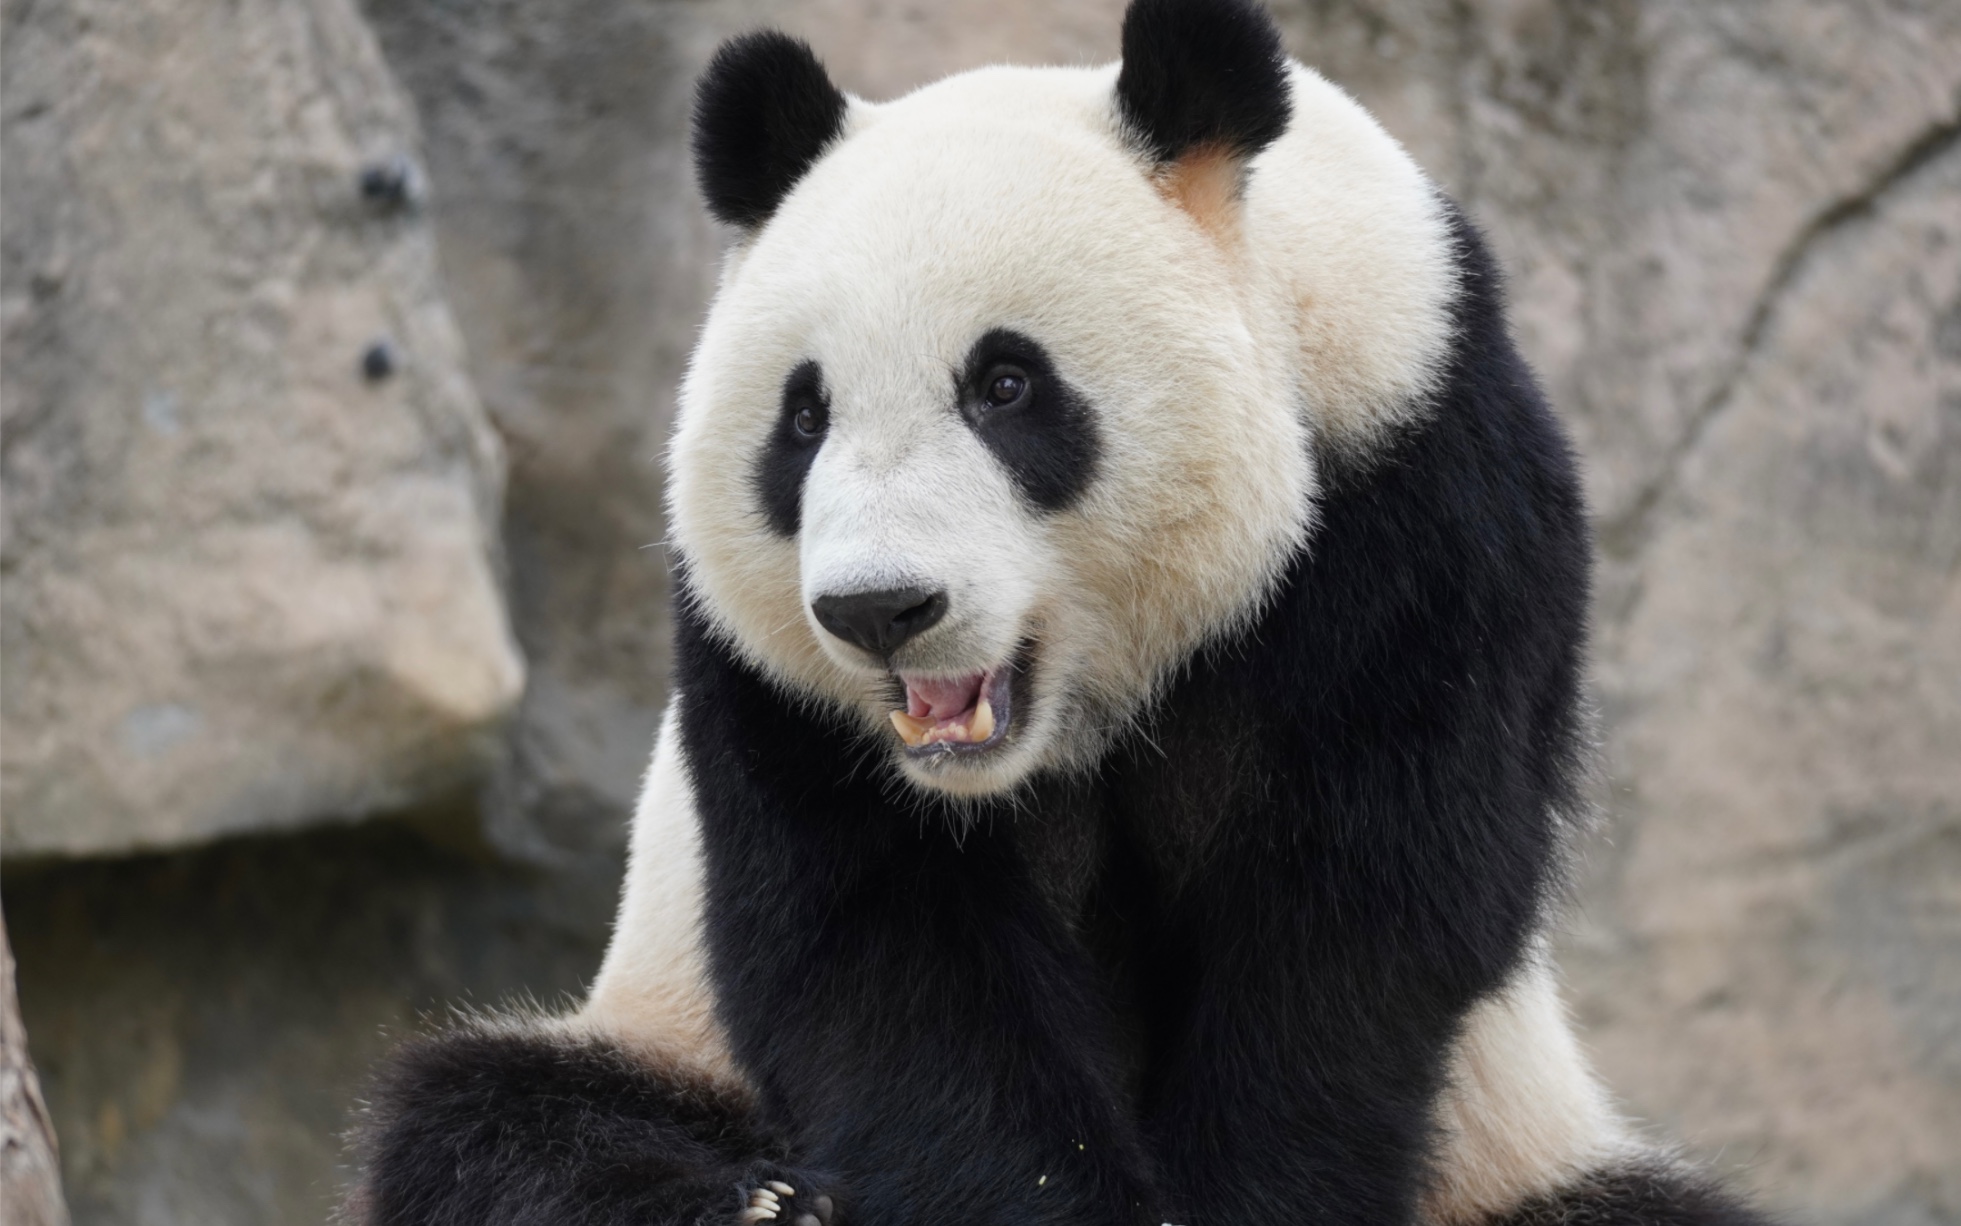 大熊猫嘉康康 雄性,2019年10月出生于上海野生动物园,母亲华嘉嘉